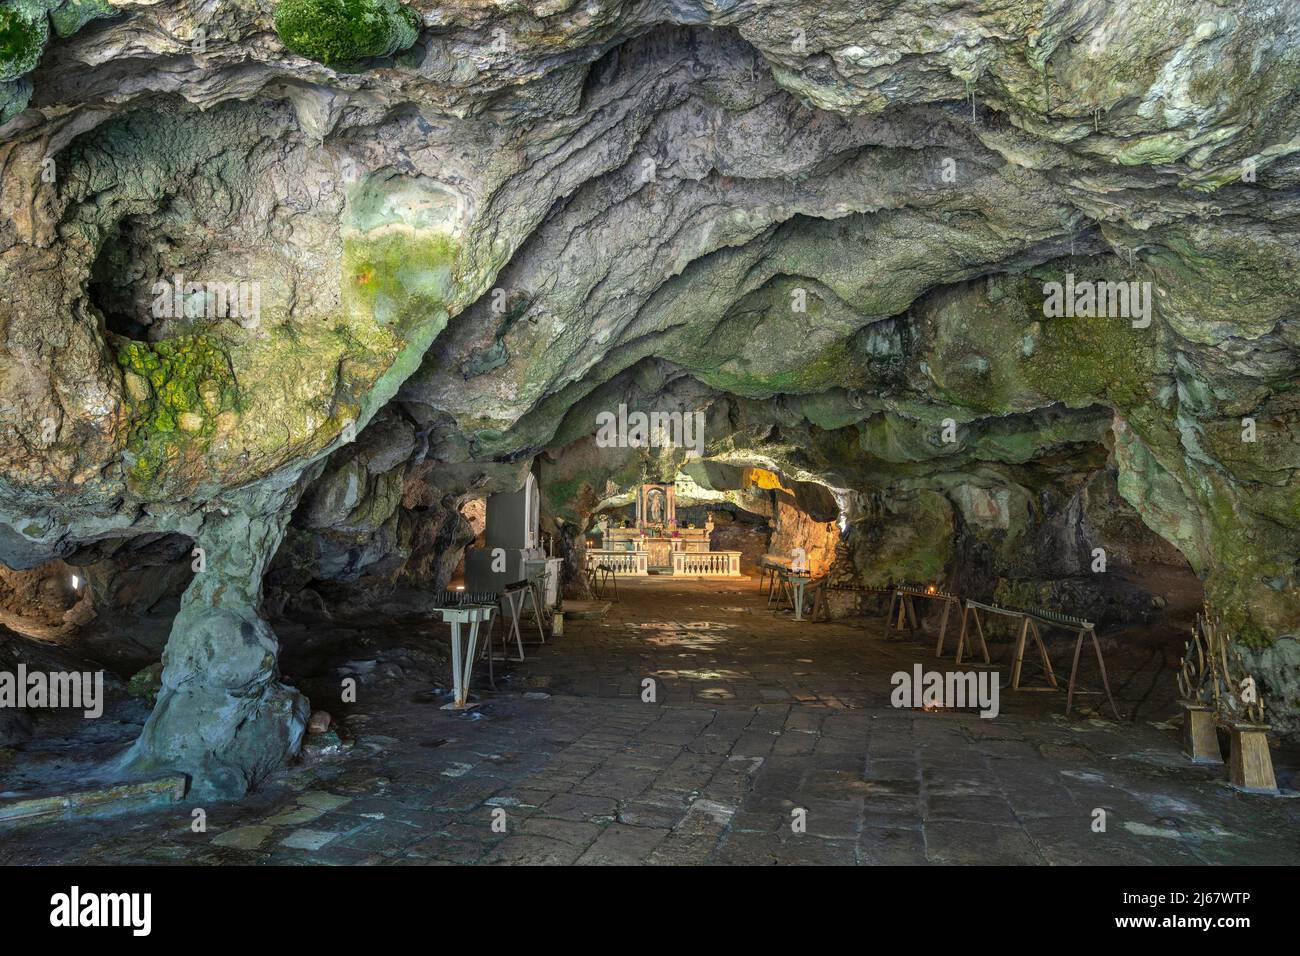 Altare maggiore nella grotta di San Michele. Cavità naturale situata su un colle dedicato fin dal Medioevo al culto di San Michele. Cagnano Varano Foto Stock